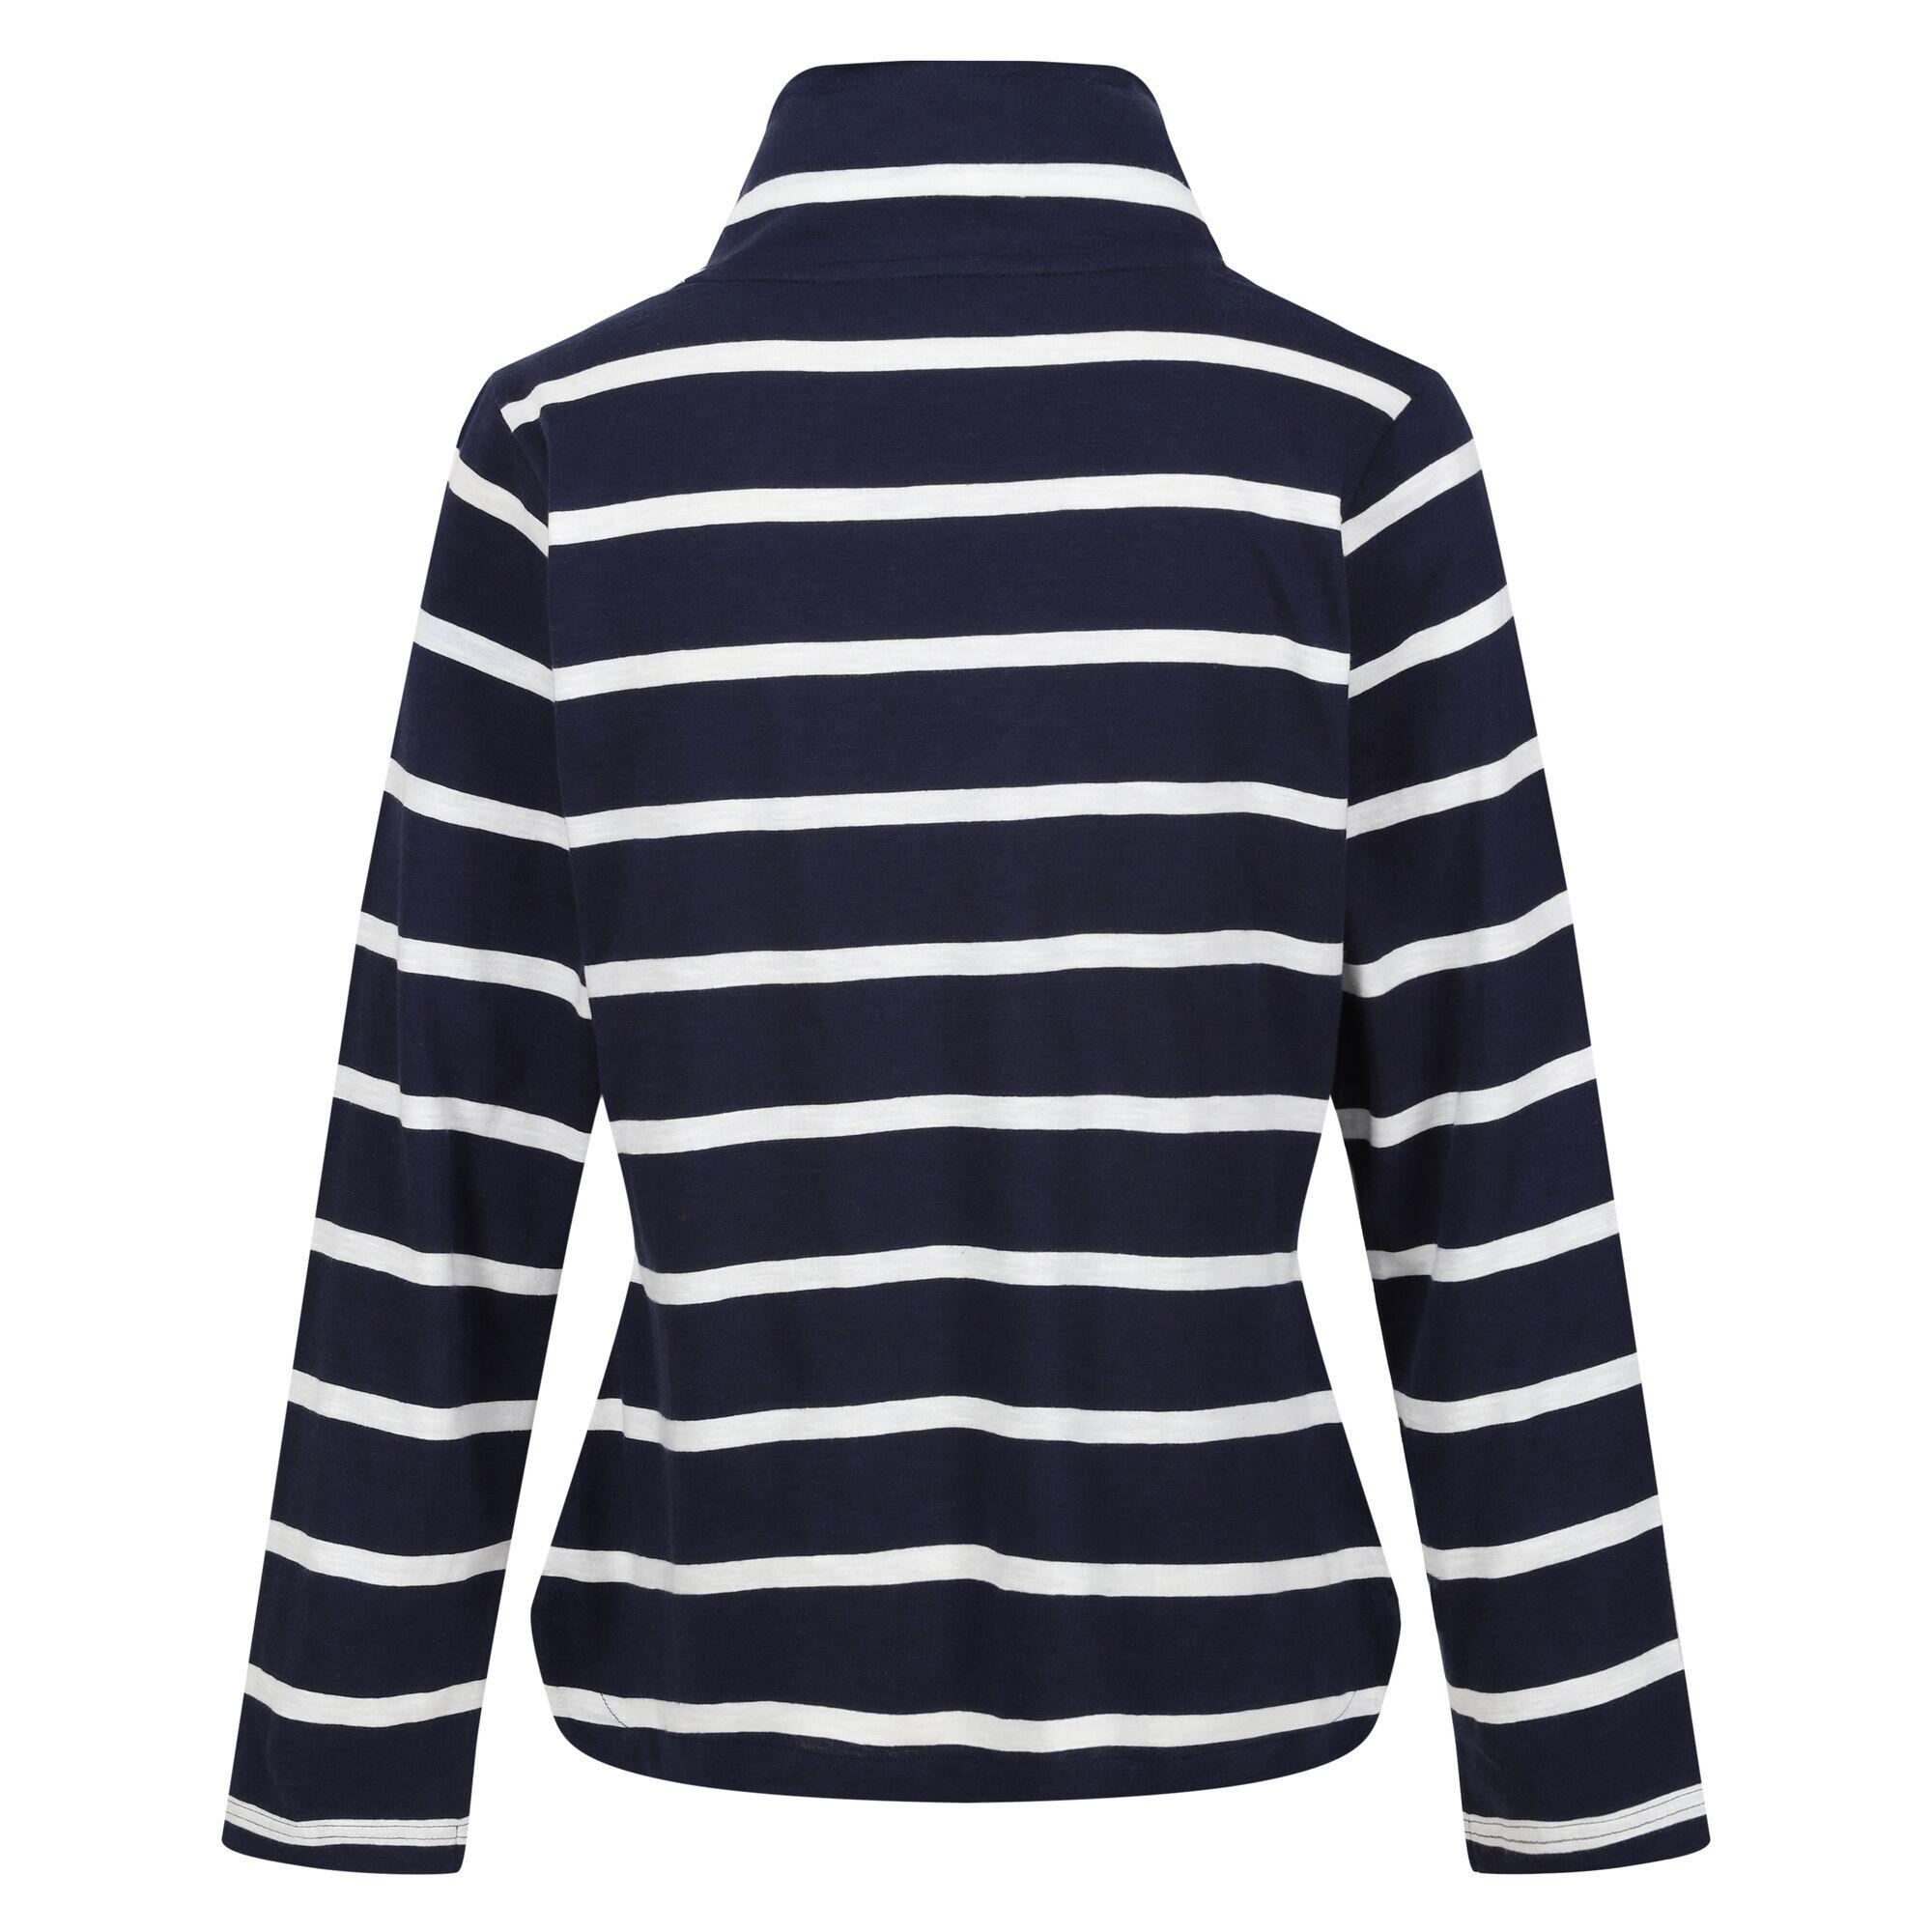 REGATTA Womens/Ladies Helvine Striped Sweatshirt (Navy/White)